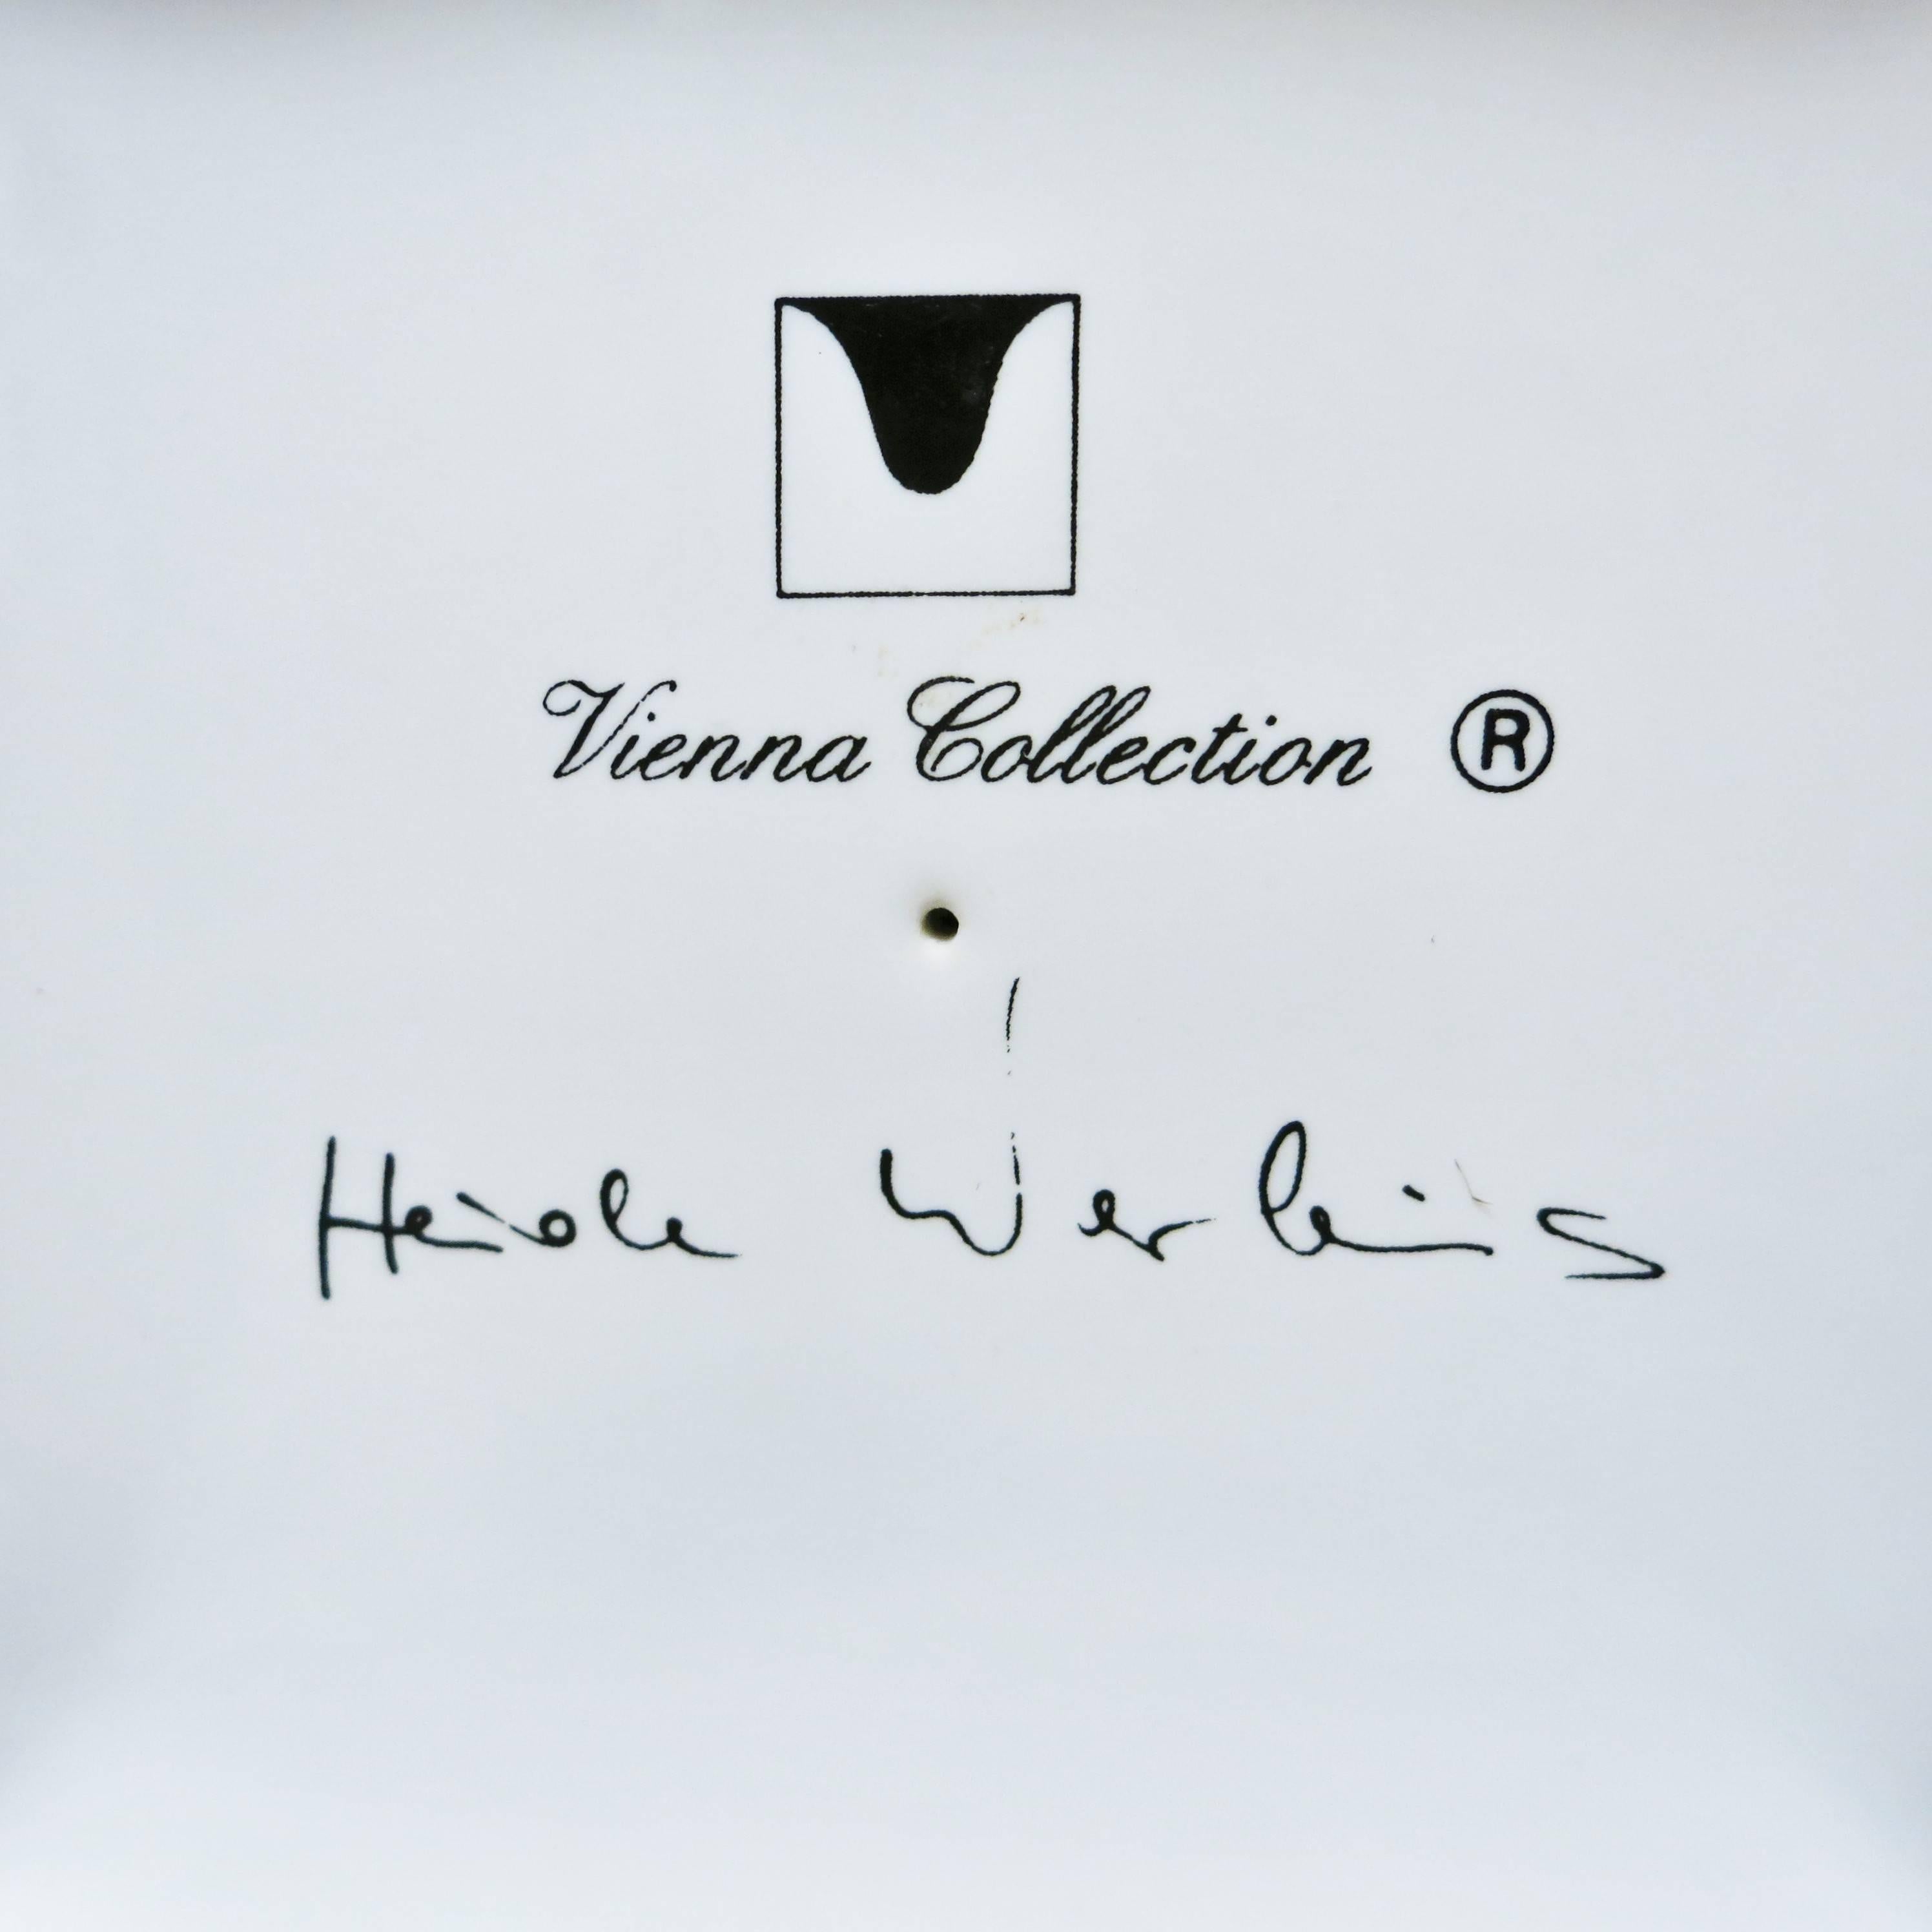 vienna collection heide warlamis